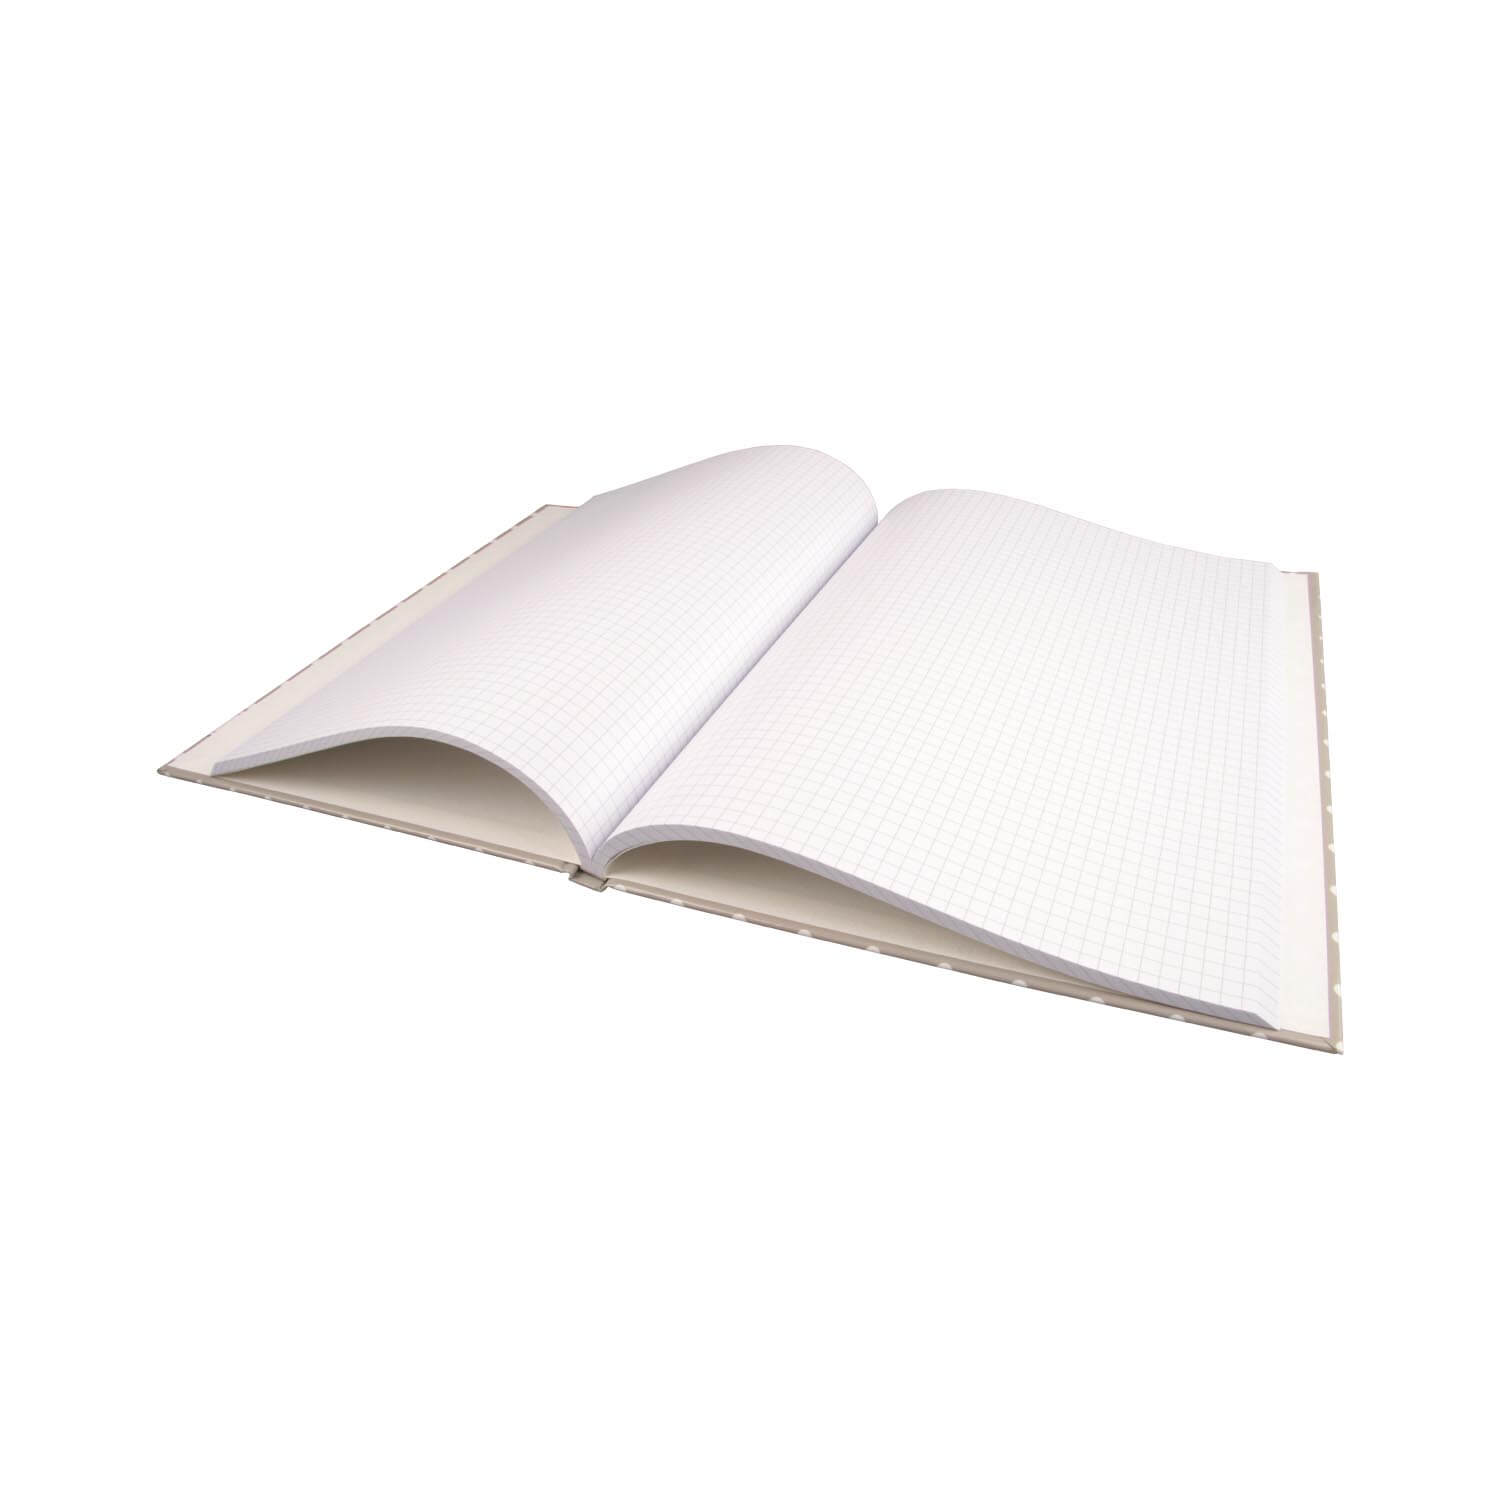 Notizbuch Hardcover individuell bedruckbar und geleimt A5/A4, hochkant, liniert/kariert/blanko